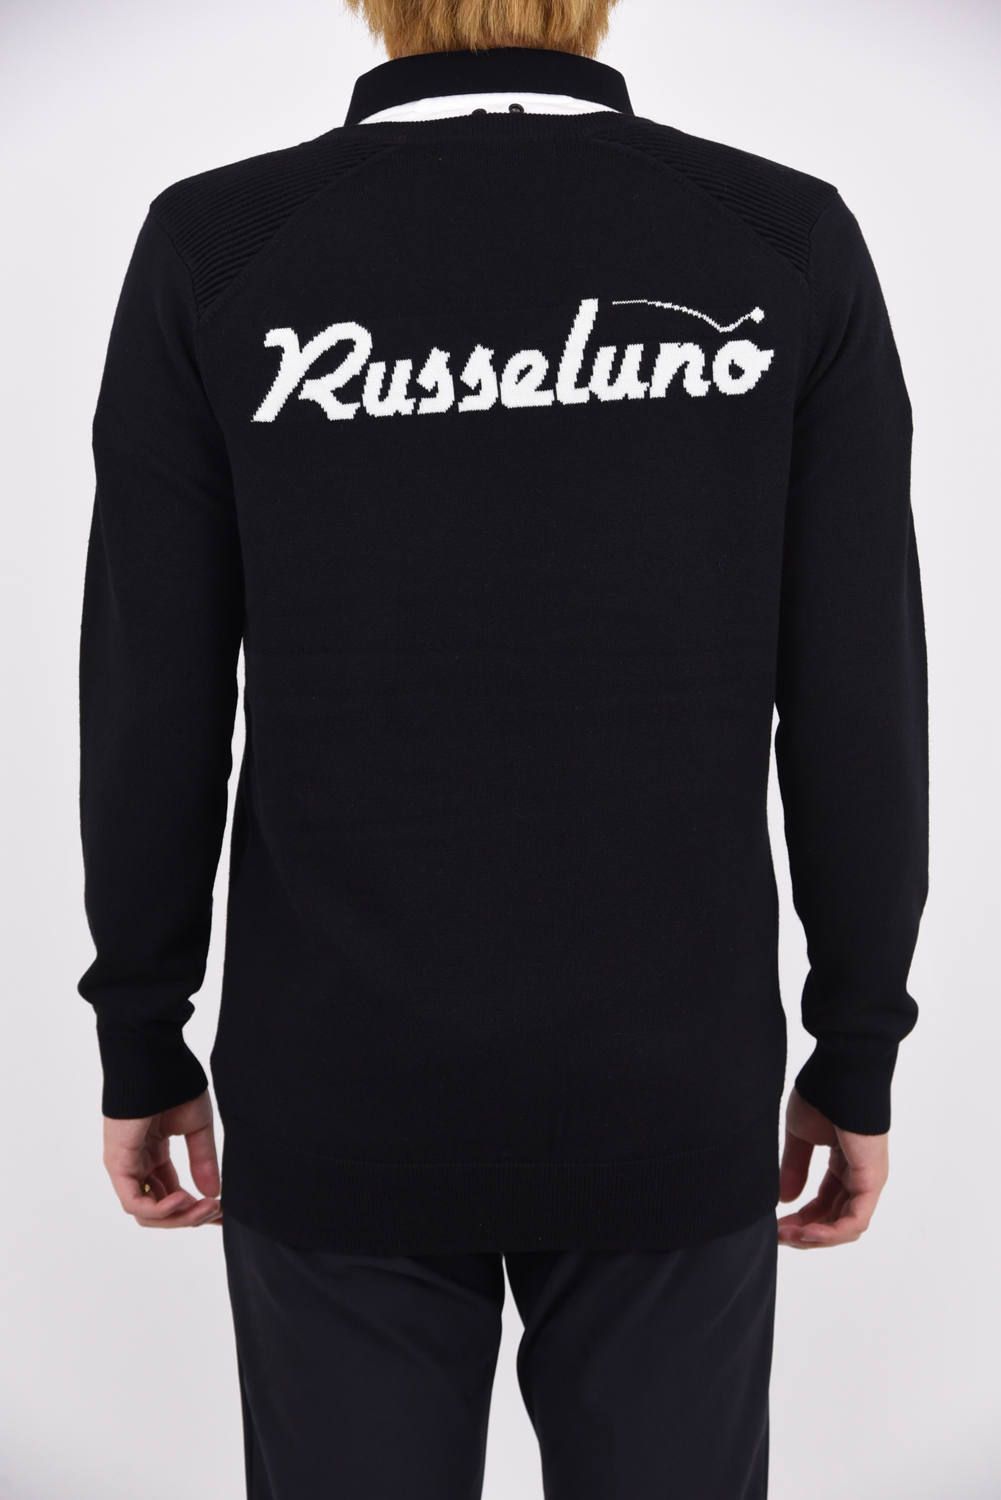 RUSSELUNO - STANDARD SWEATER / ルチャロゴワッペン Vネックセーター